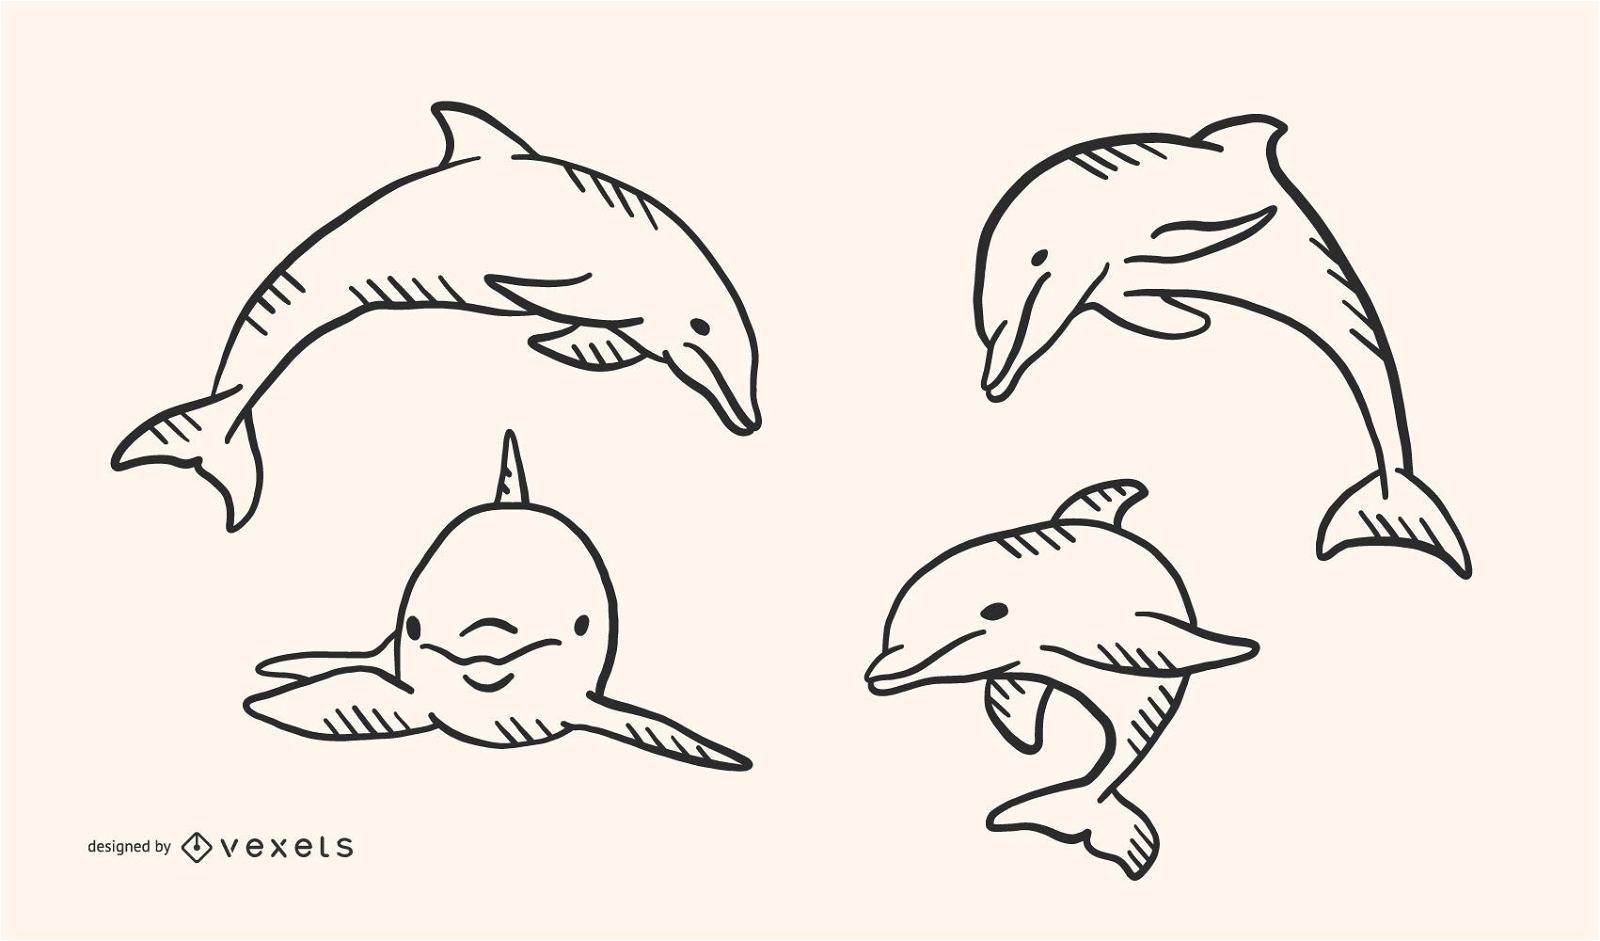 Dise?o del vector del estilo del Doodle del delf?n